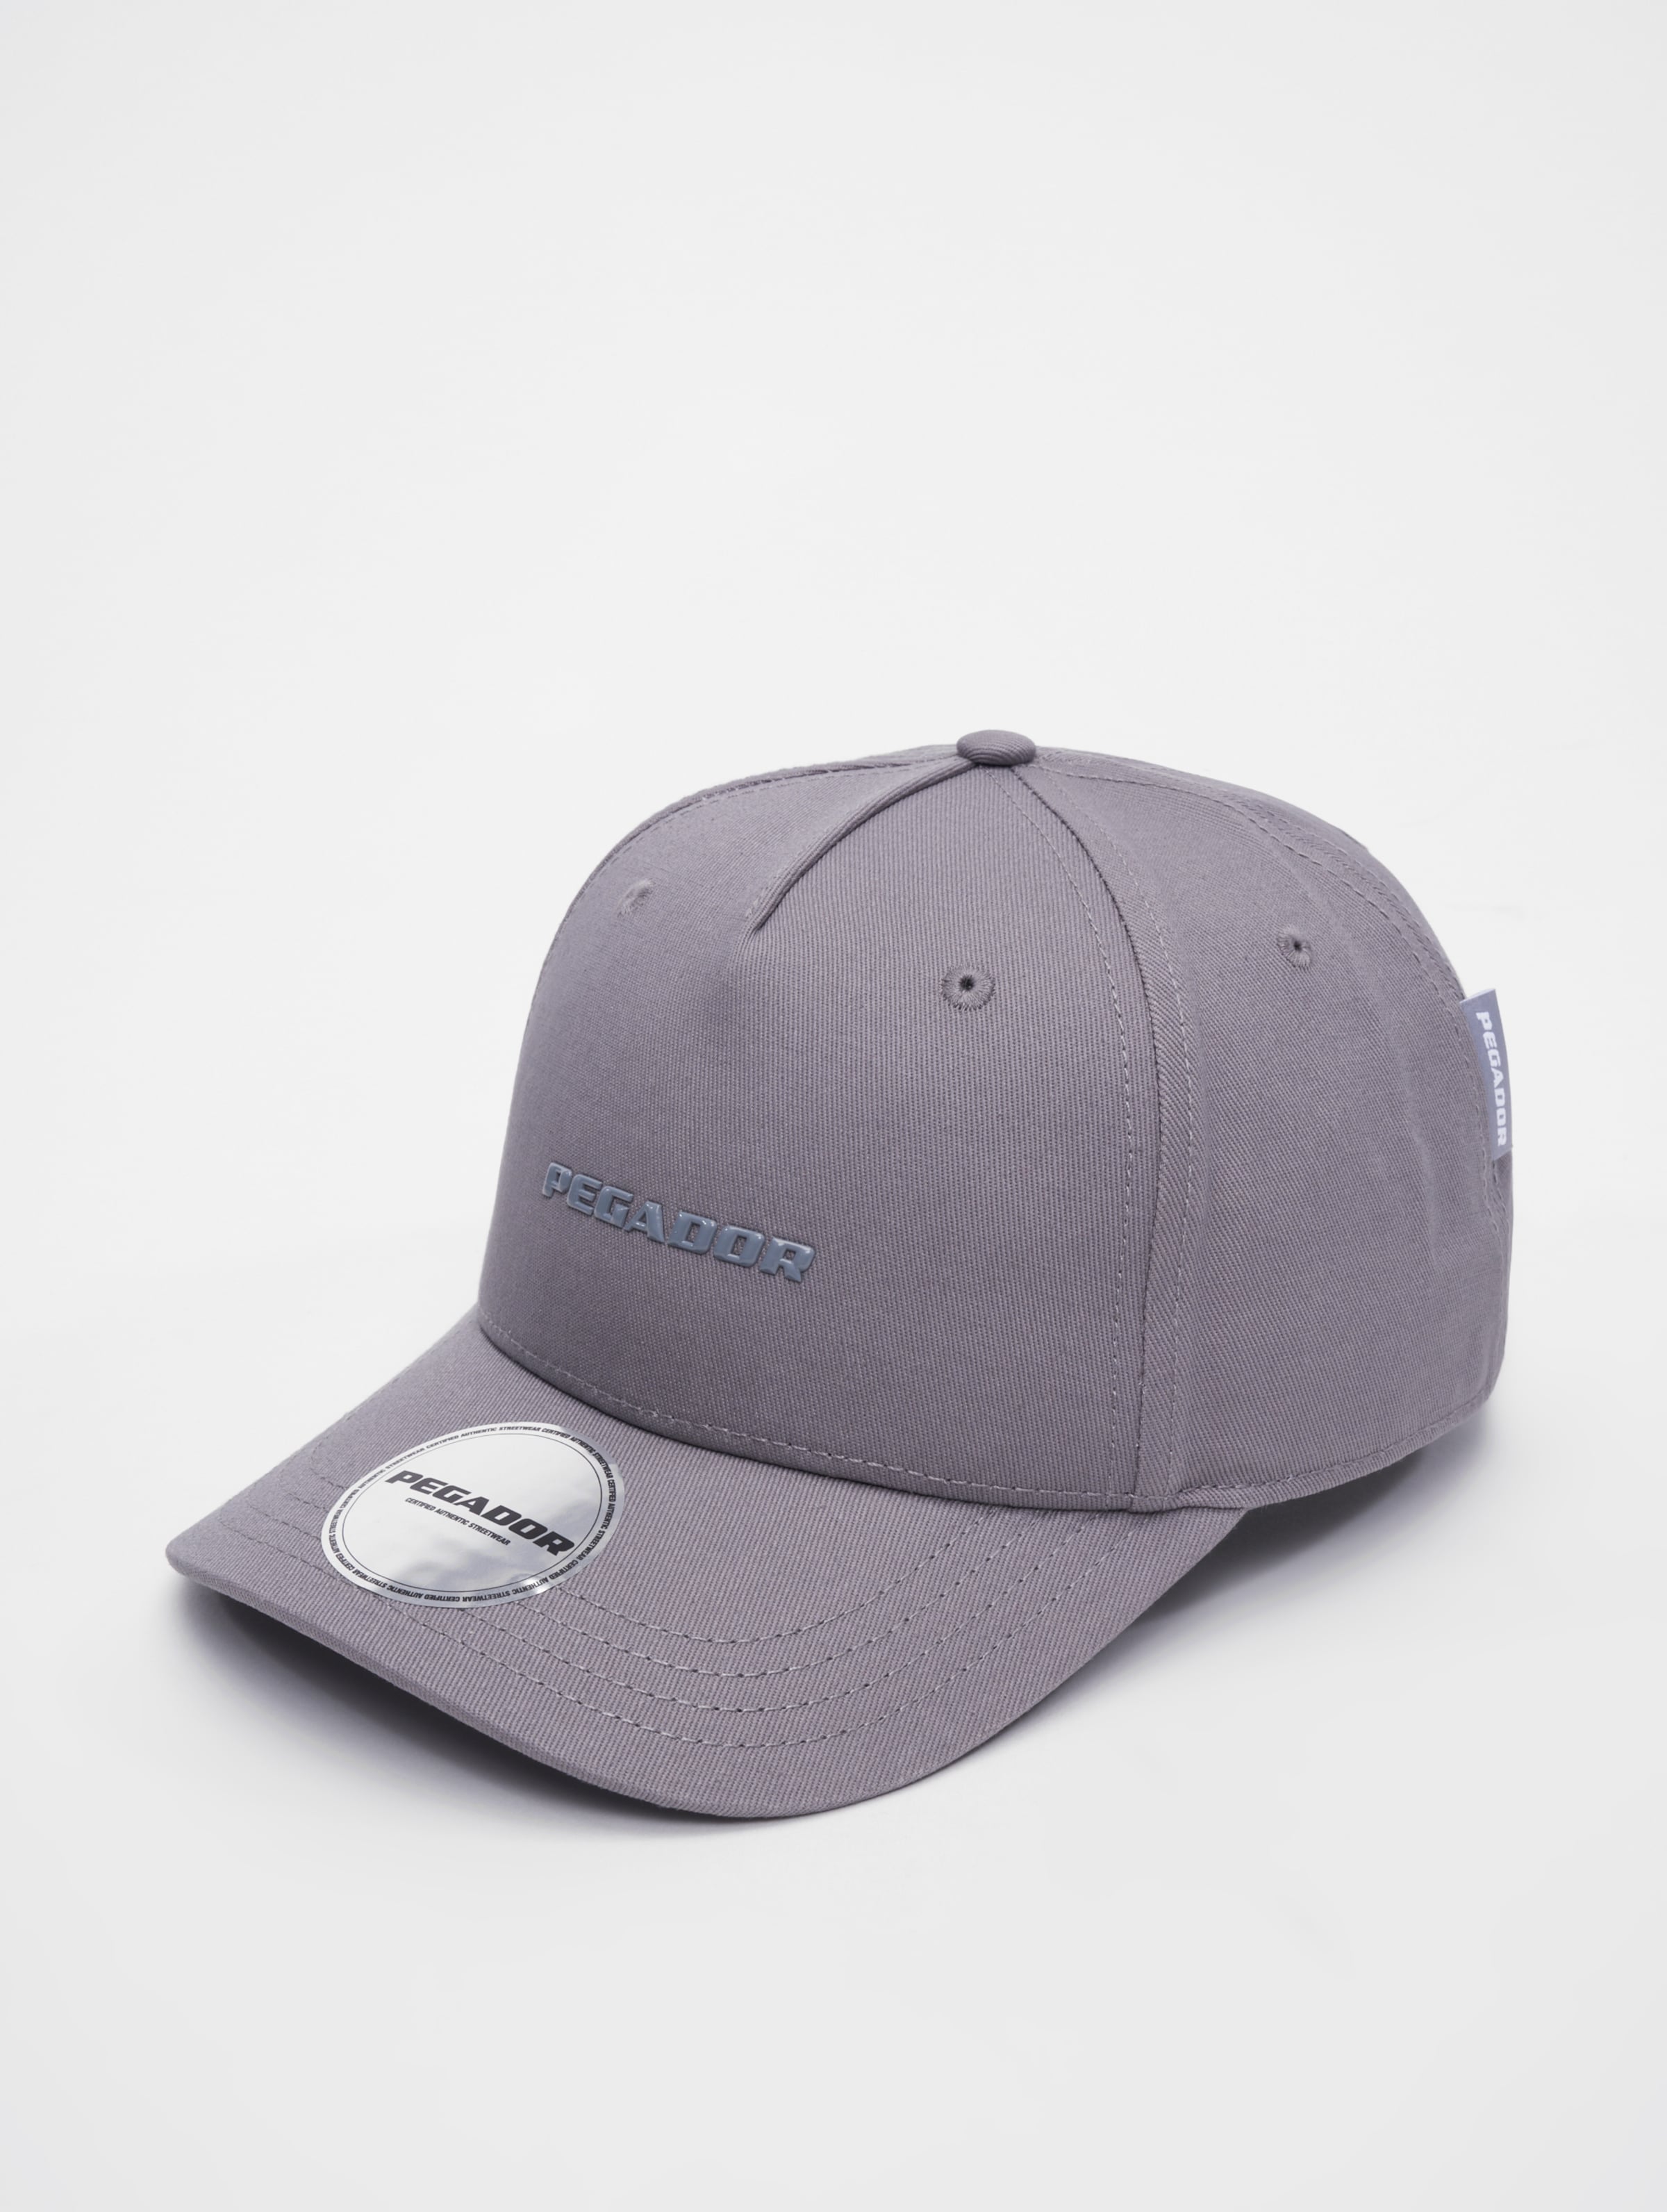 PEGADOR Logo Snapback Caps Frauen,Männer,Unisex op kleur grijs, Maat ADJUSTABLE